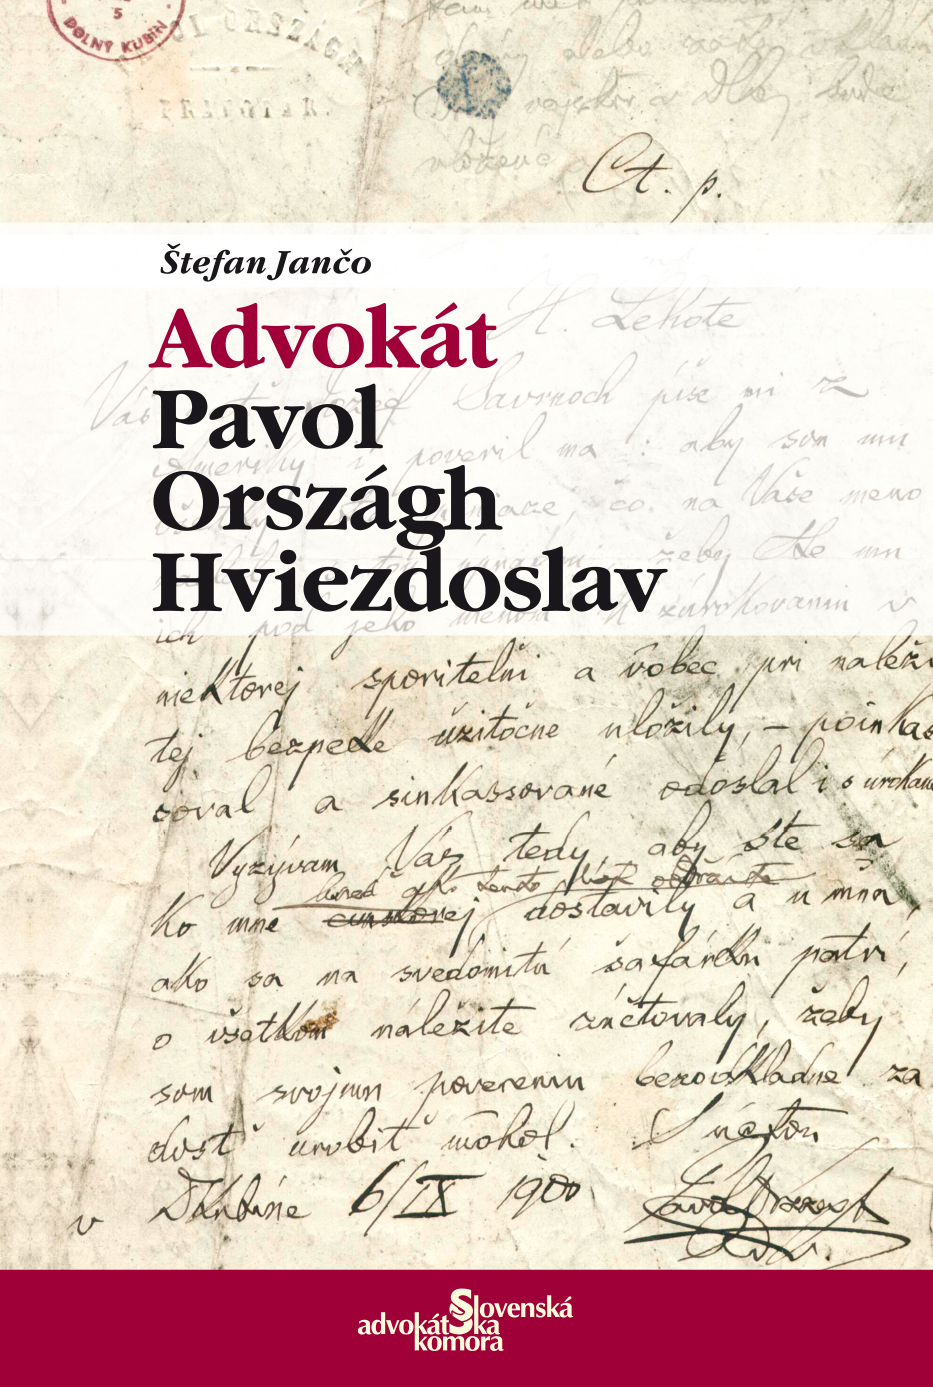 Spomienka na Hviezdoslava - básnika a advokáta